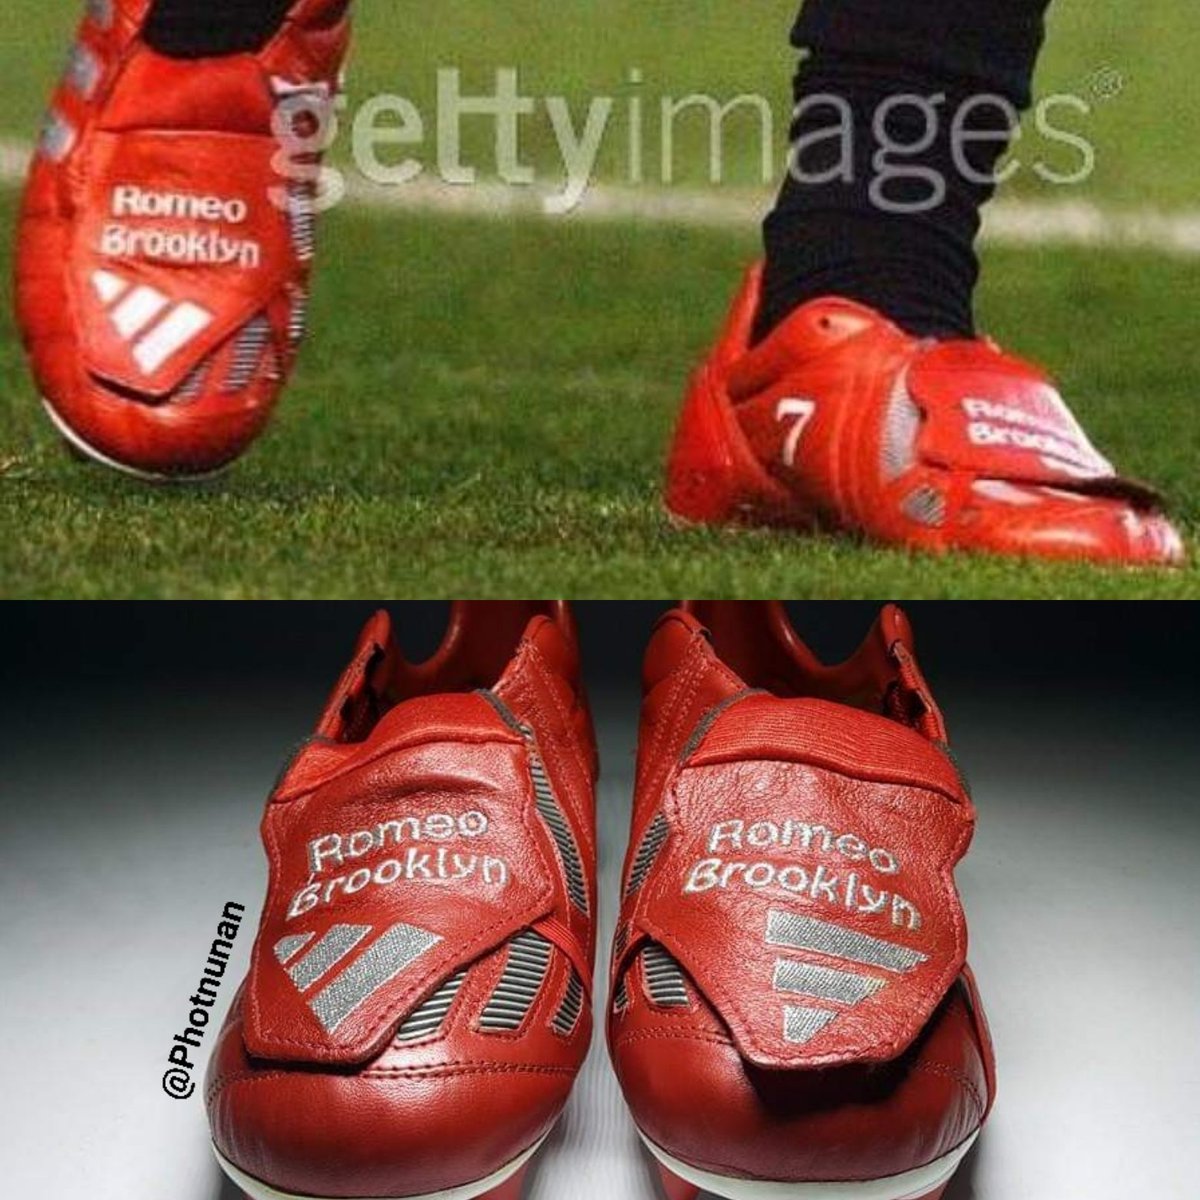 Photnunan David Beckham Match Issue Boots